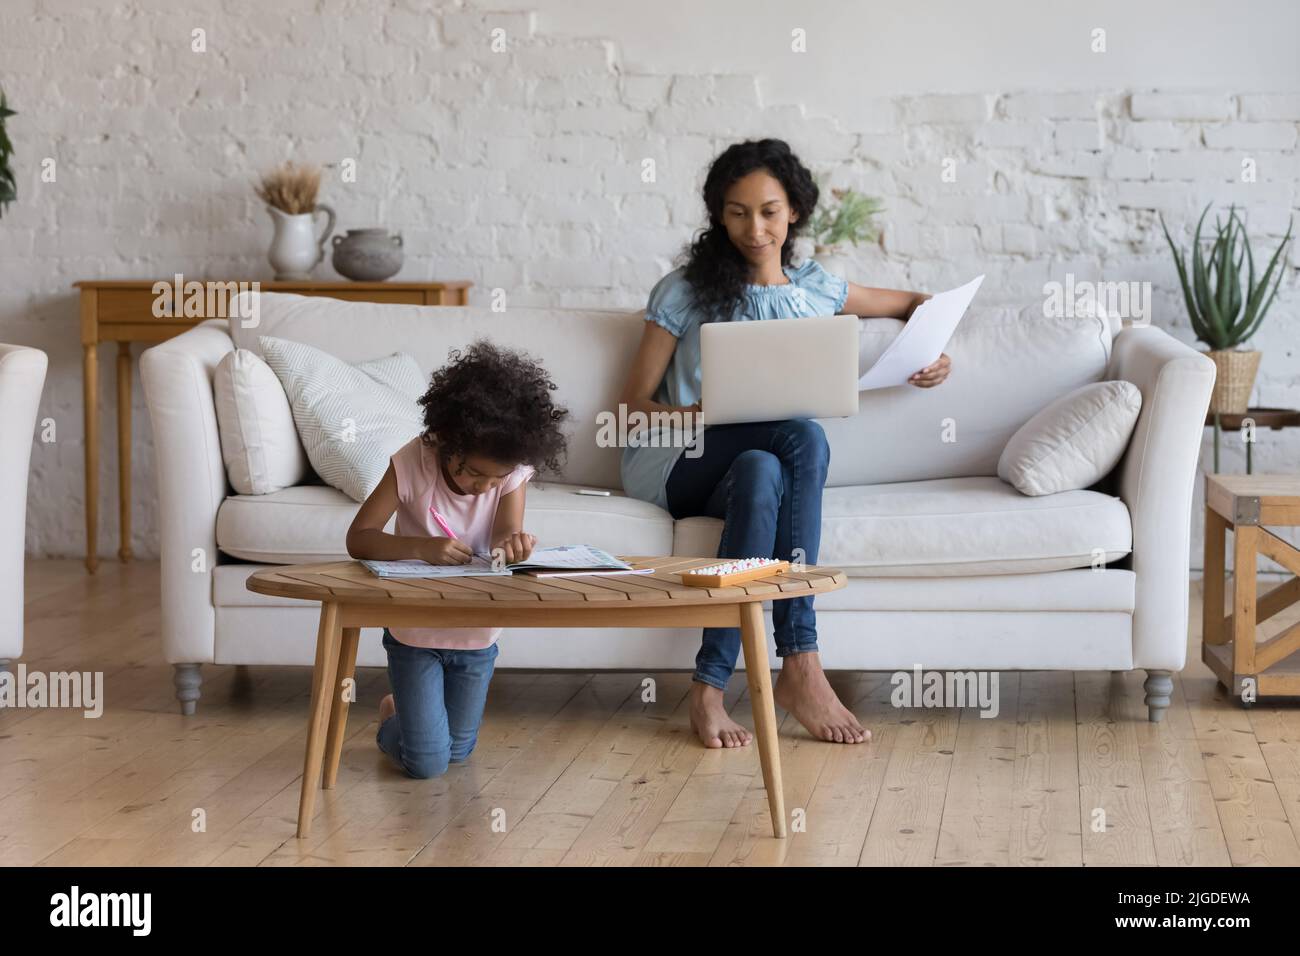 Une mère africaine travaille sur un ordinateur portable, sa fille dessinant assise à proximité Banque D'Images